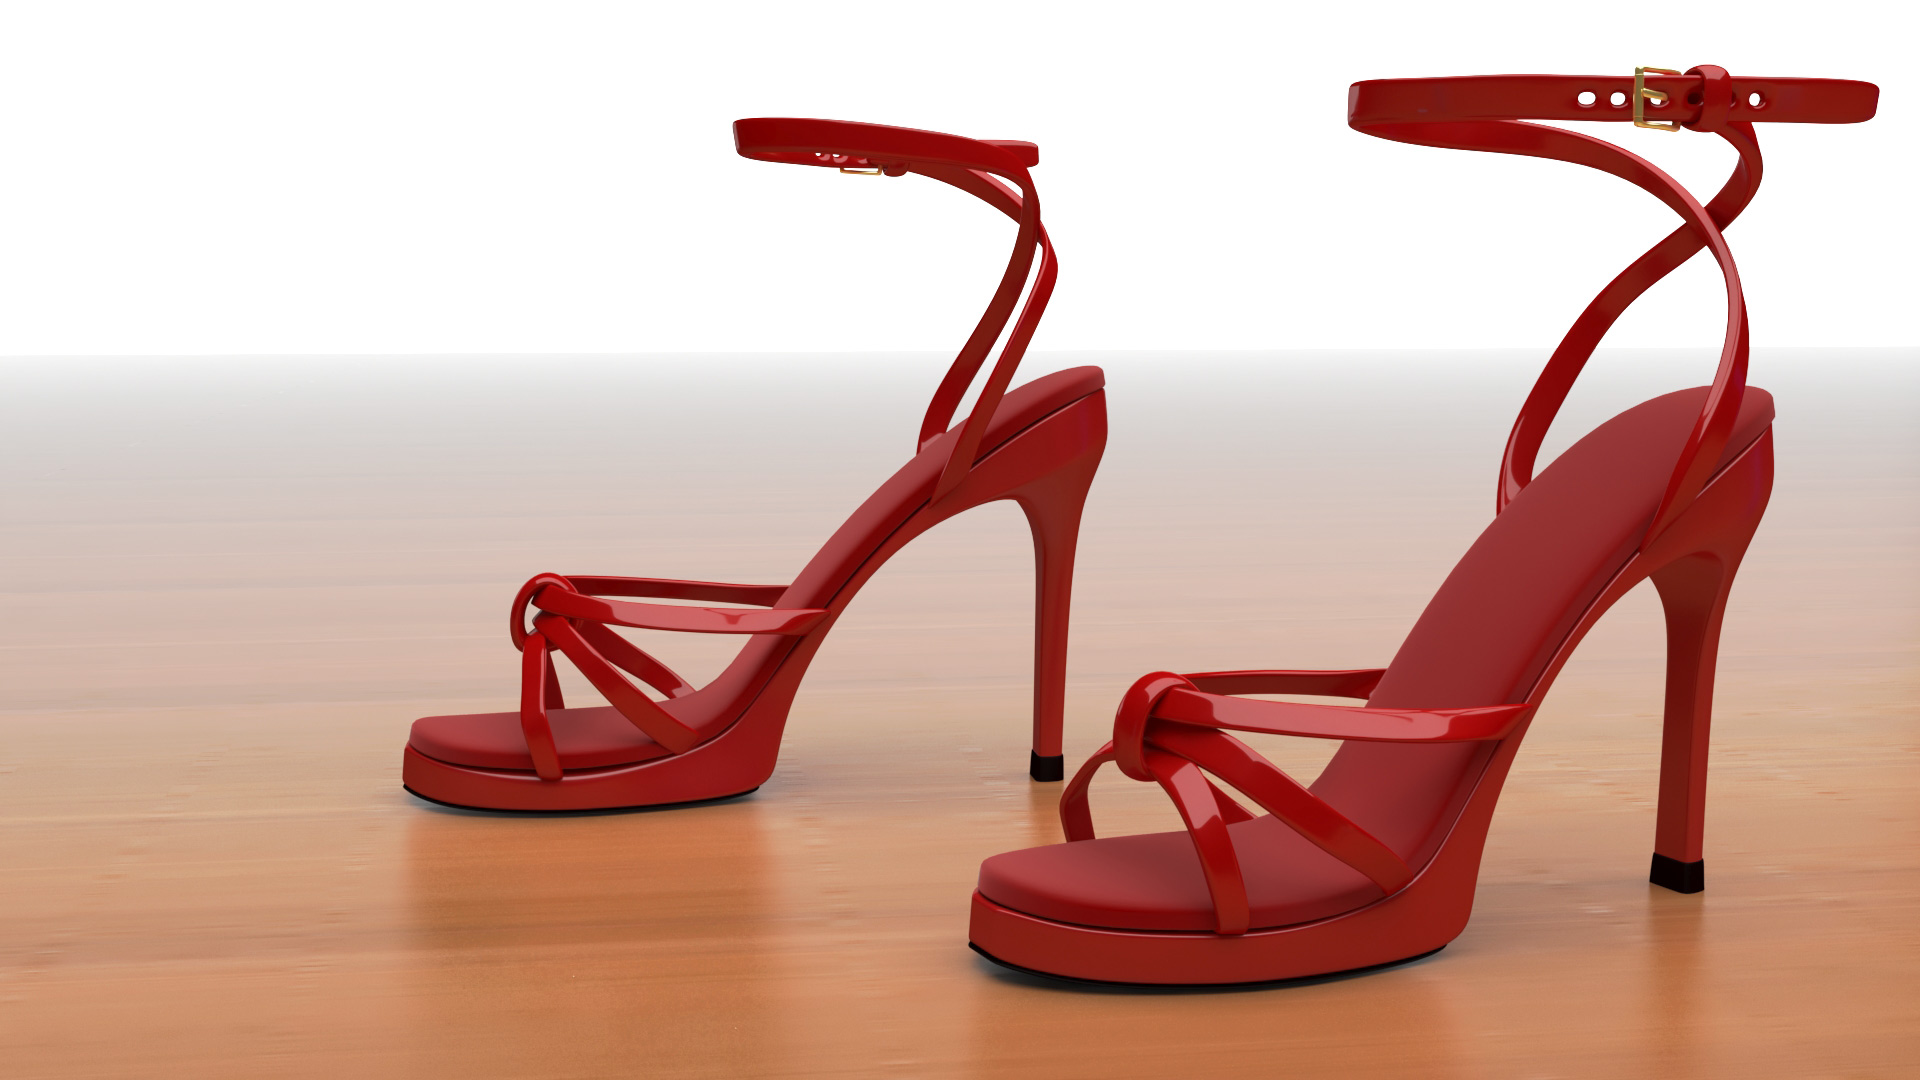 Modélisation 3D de chaussures, sandales à talon -3D freelance